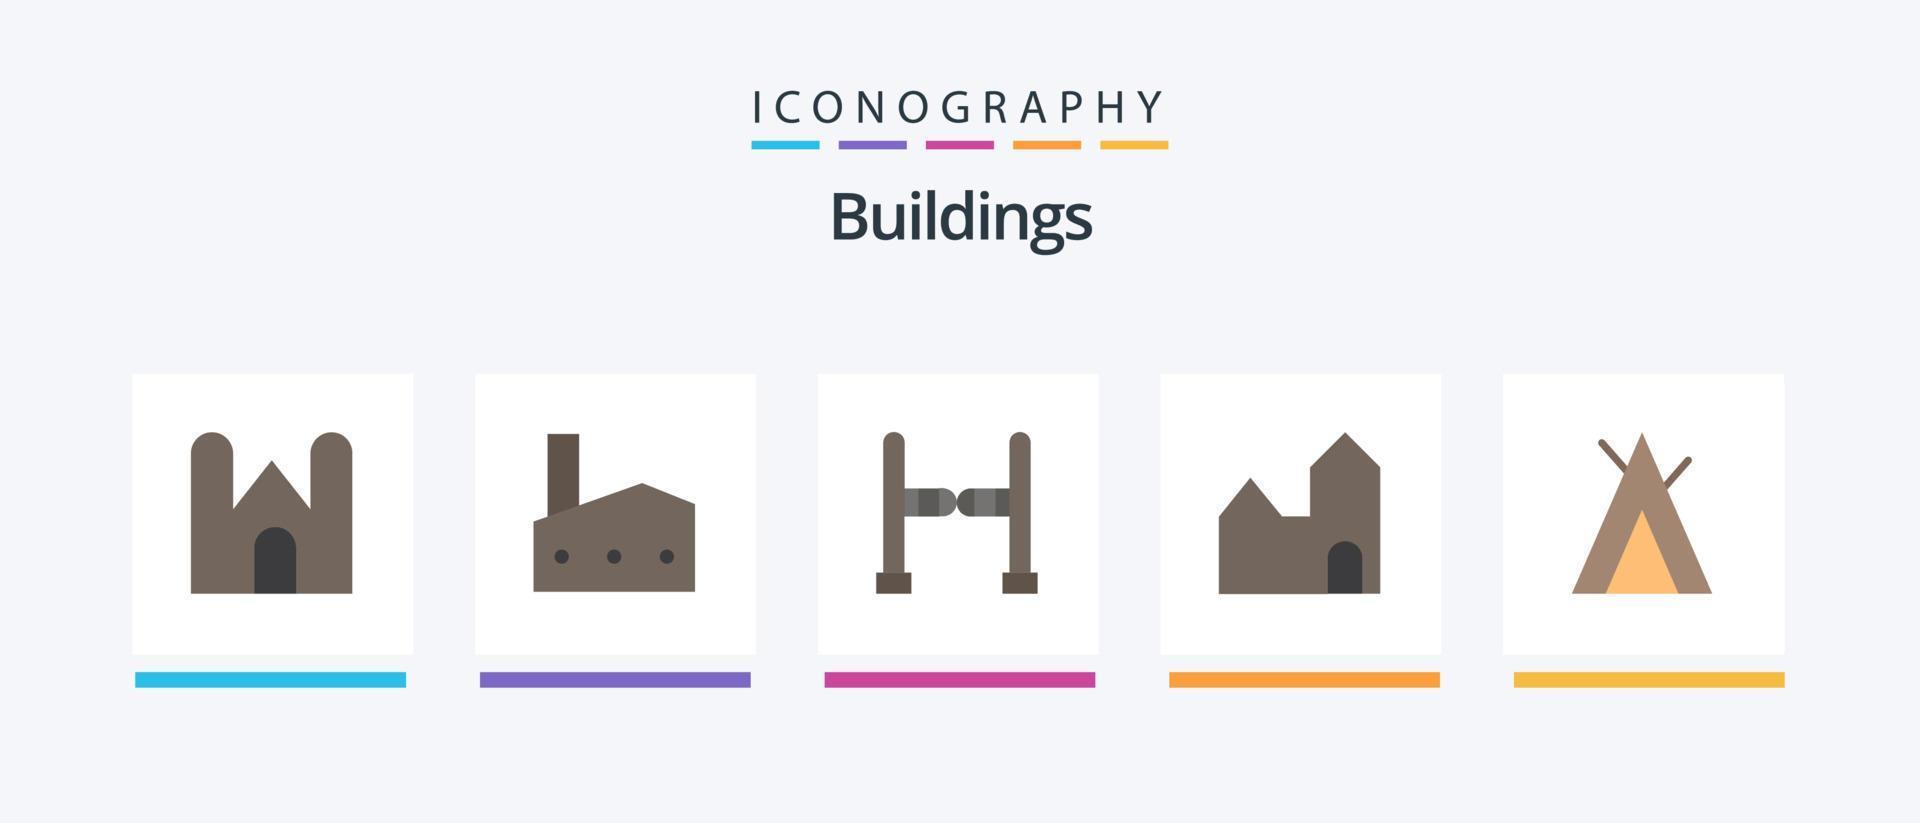 byggnader platt 5 ikon packa Inklusive läger. industriell växt. industri. fabrik skorsten. gunga. kreativ ikoner design vektor